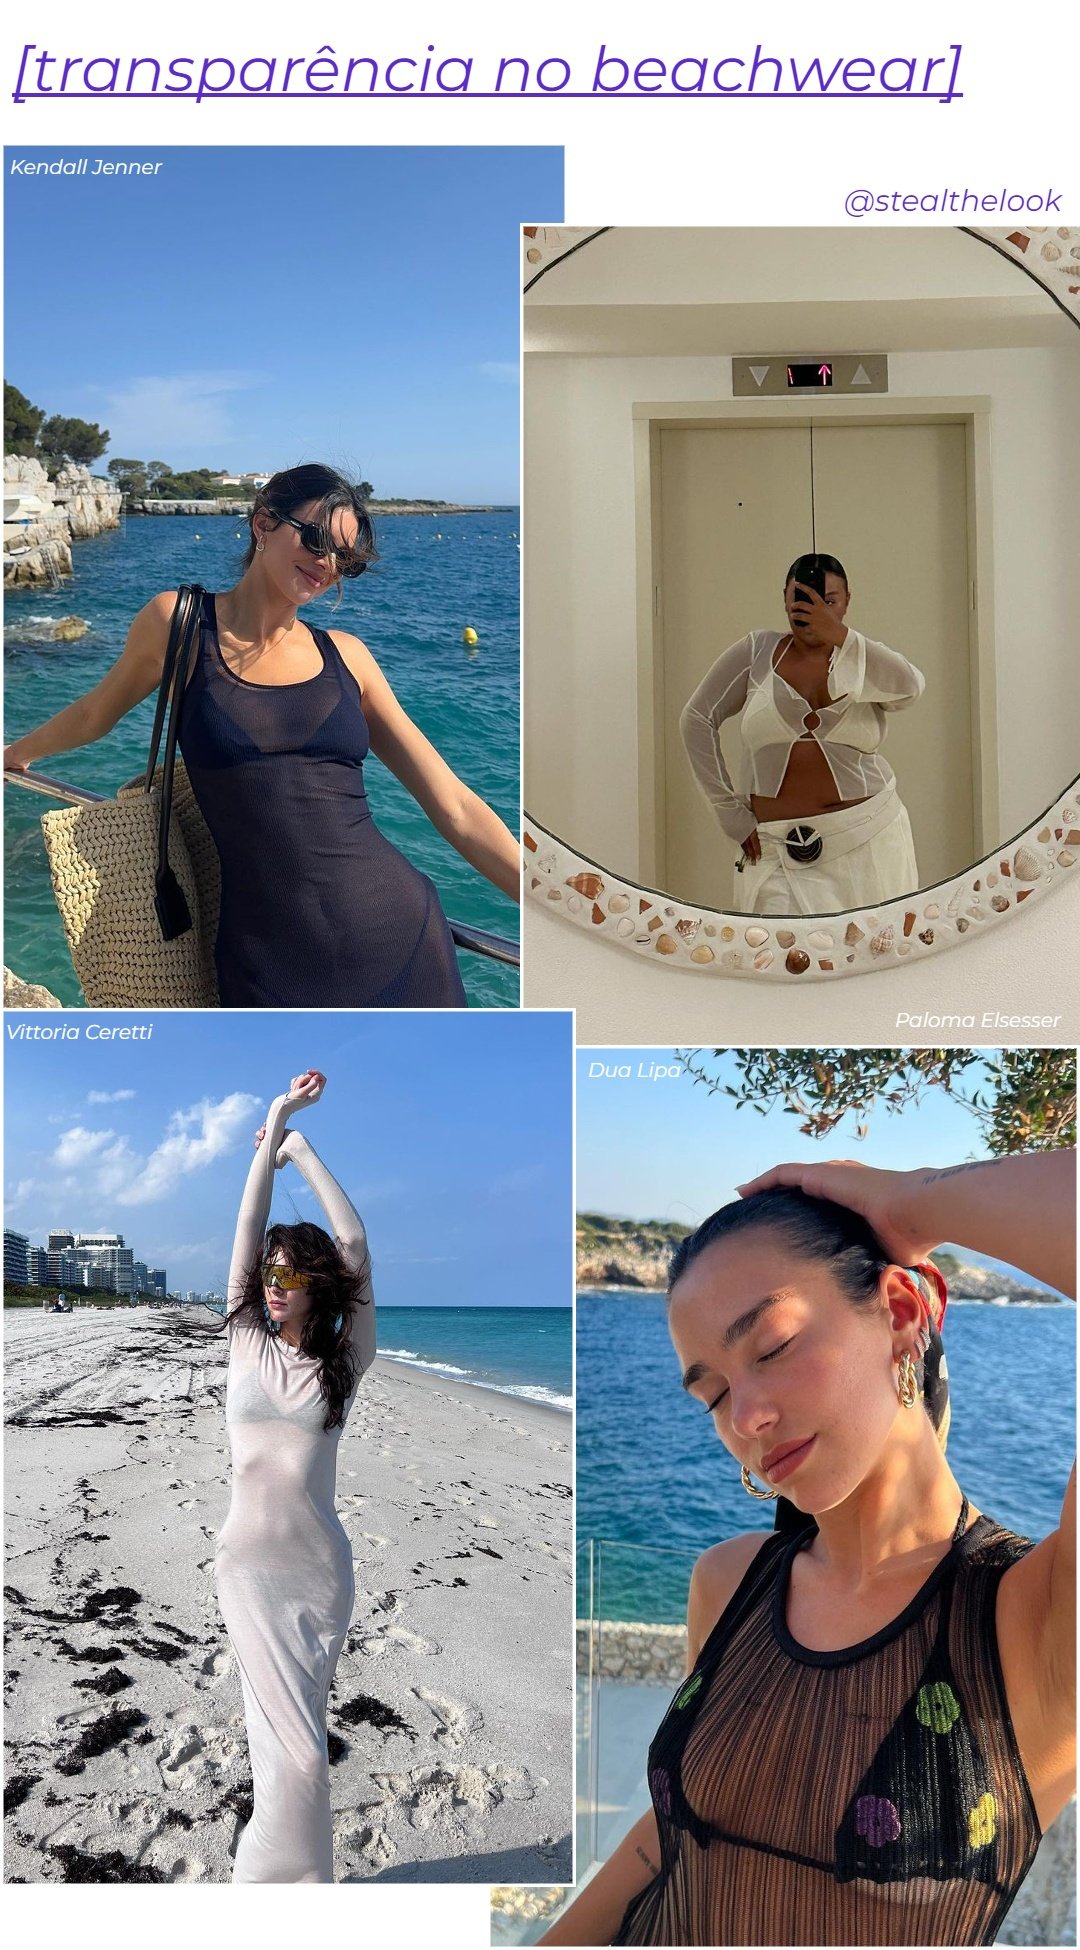 Kendall Jenner, Dua Lipa, Paloma Elsesser e Vittoria Ceretti - looks de praia variados - tendências de verão - verão - colagem com quatro celebridades diferentes - https://stealthelook.com.br